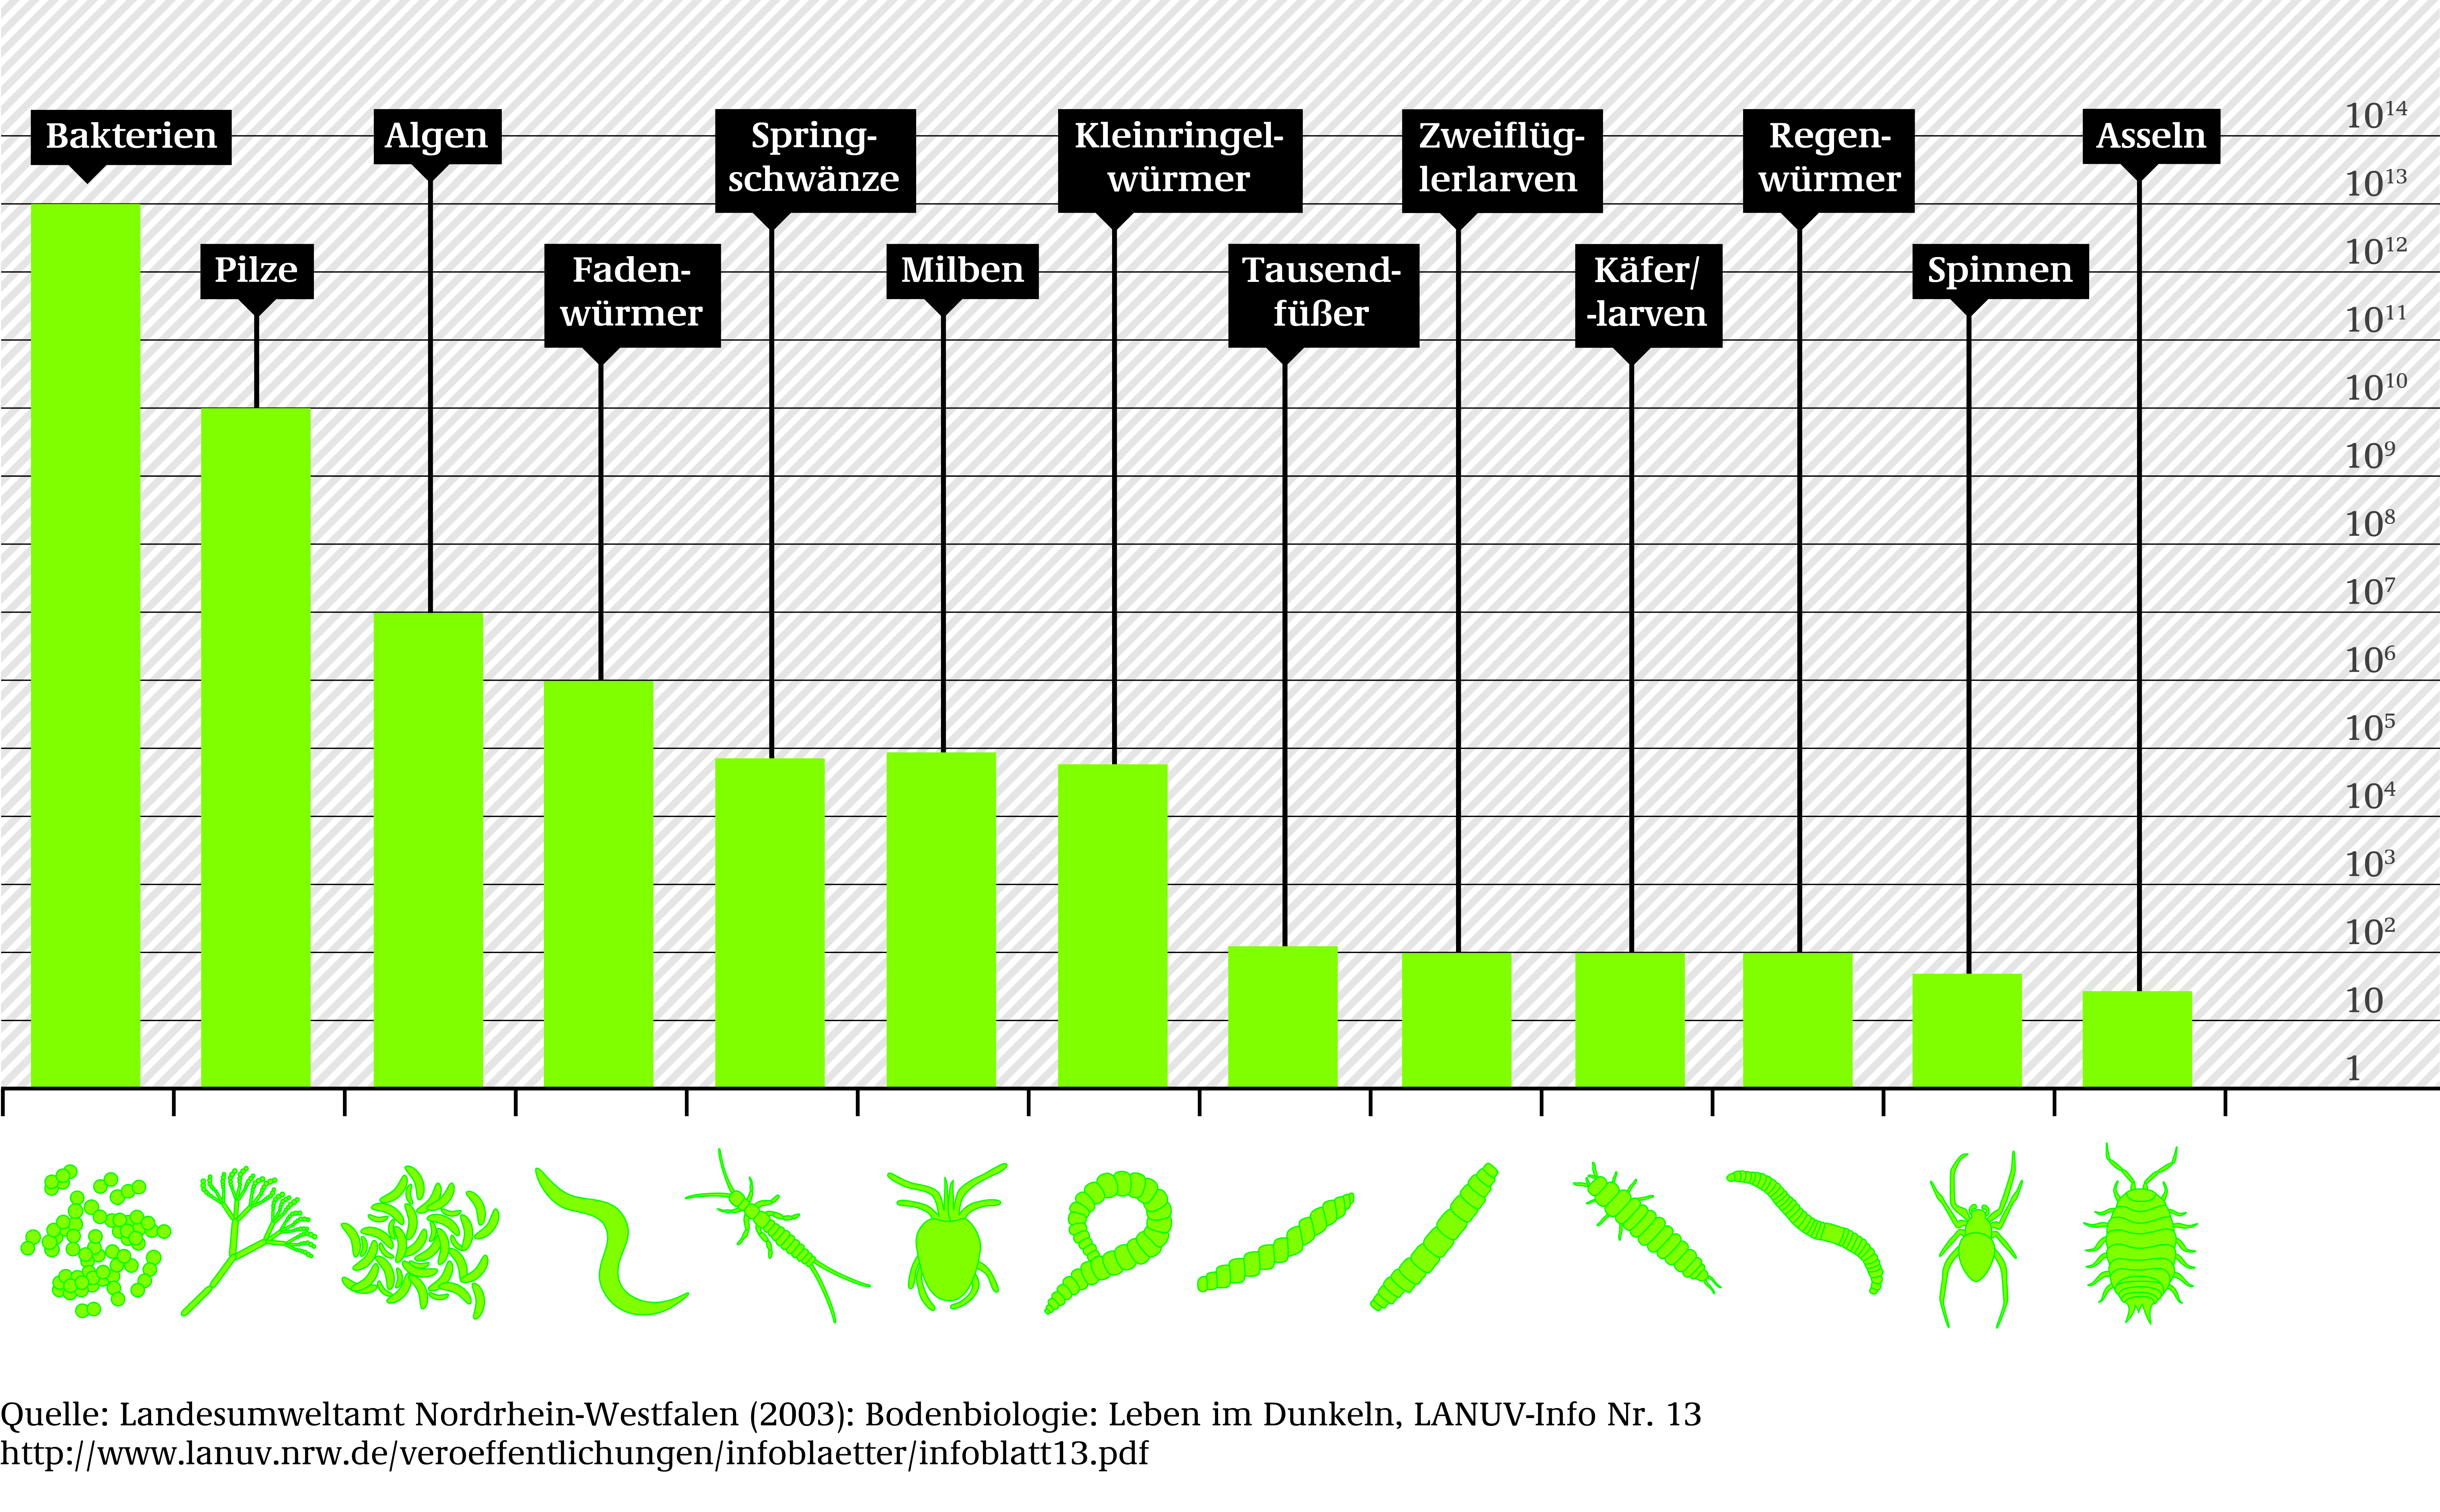 Das Säulendiagramm zeigt an wieviele der einzelnen Arten im Boden leben. Bakterien kommen billionenfach im Boden vor, während es bei den Asseln unter 100 sind.